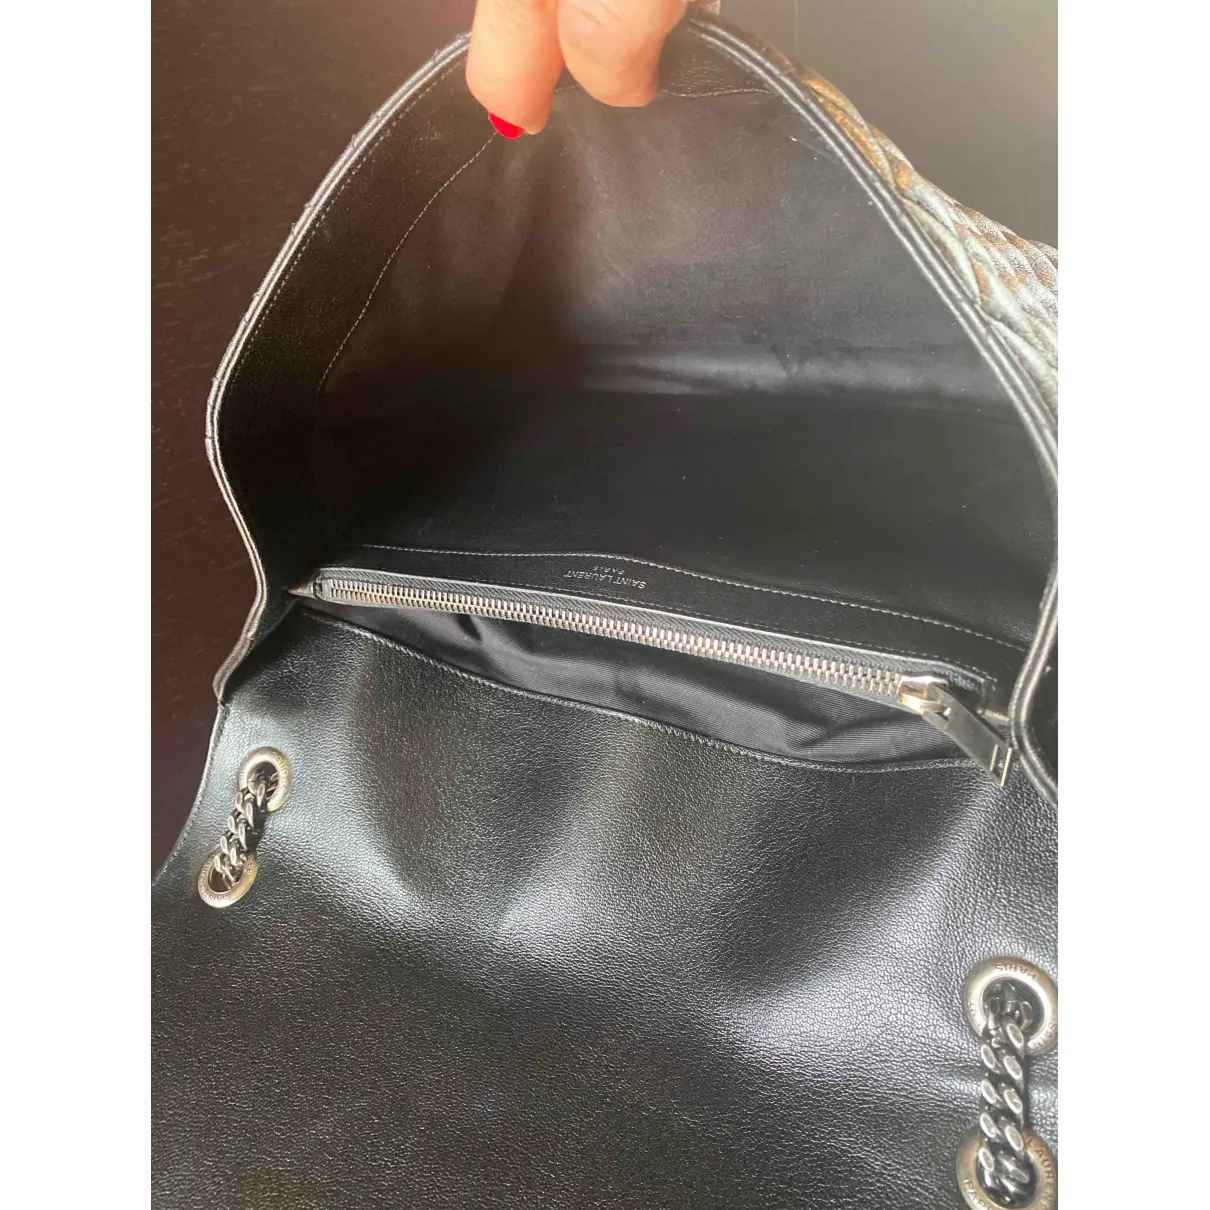 Loulou leather handbag Saint Laurent